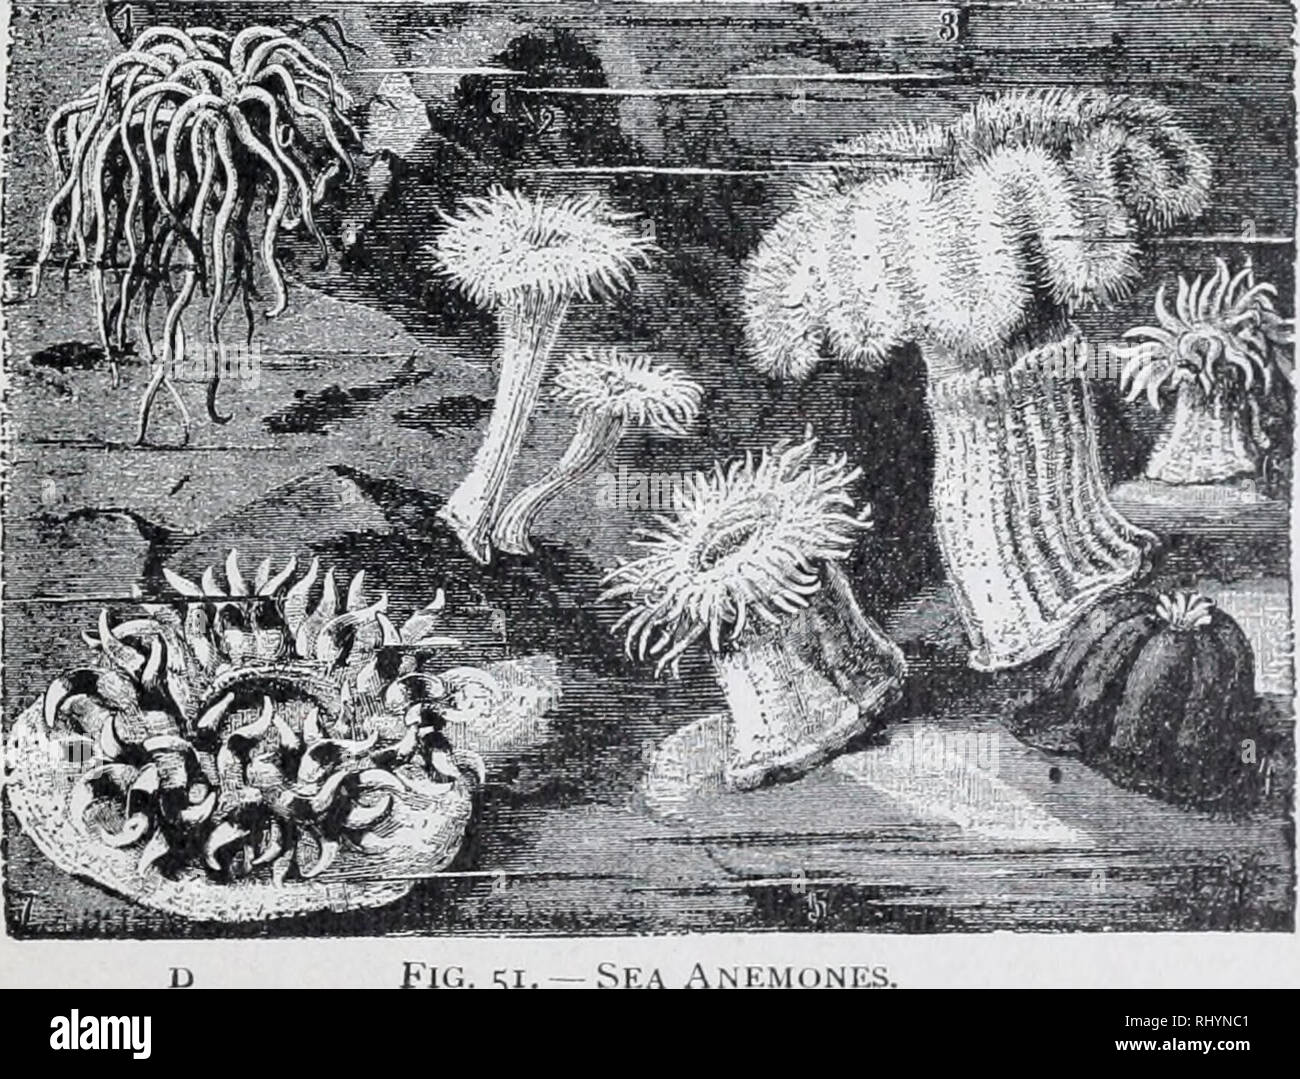 . Anfänger Zoologie. Zoologie. Die Seeanemone, wie die Coral Polyp, Leben im Meer, aber wie der Süßwasser-Hydra, er zahlt keine Kalkigen s7 ipport für seinen Körper. Die Anemone ist viel größer als die Hydra und die meisten korallenpolypen, viele spe-c i e s a t eine Höhe von mehreren Zoll. Es Nicht colo-Nies. Wenn seine Arme sind gezeichnet, es sieht aus wie ein großer Knopf der glänzenden aber undurchsichtig Gelee. Polypen verwendet zoophytes {Anlage - Tiere genannt zu werden), die aufgrund ihrer Blüte Aussehen (Abbn. 50, 51). Abb. 49. - Aufrecht schnitt durch Coral polyp X 4. ms, Mund;&gt; "r, Speiseröhre, h, h, fleischige Partiti Stockfoto